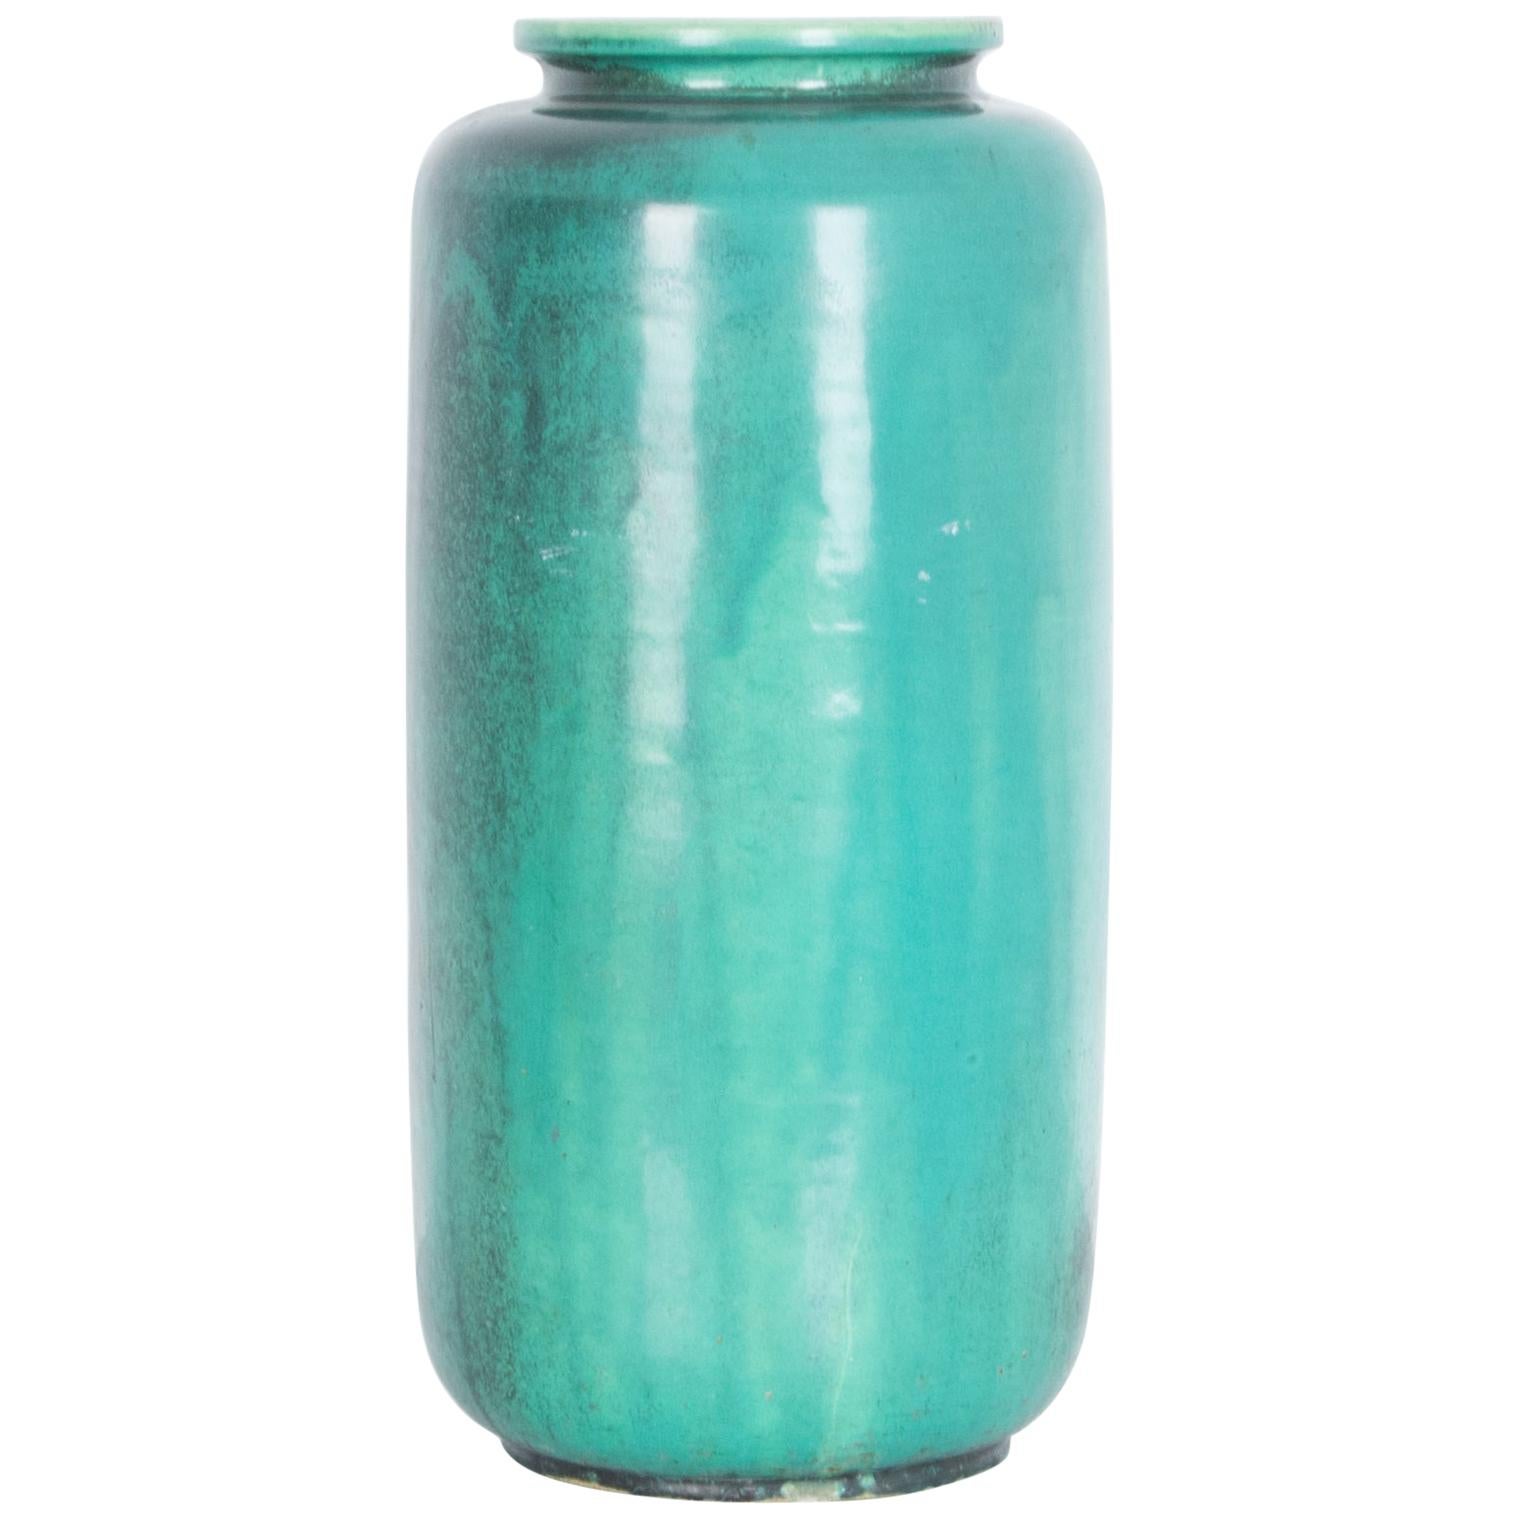 1960s Midcentury German Aqua Blue Glazed Ceramic Vase